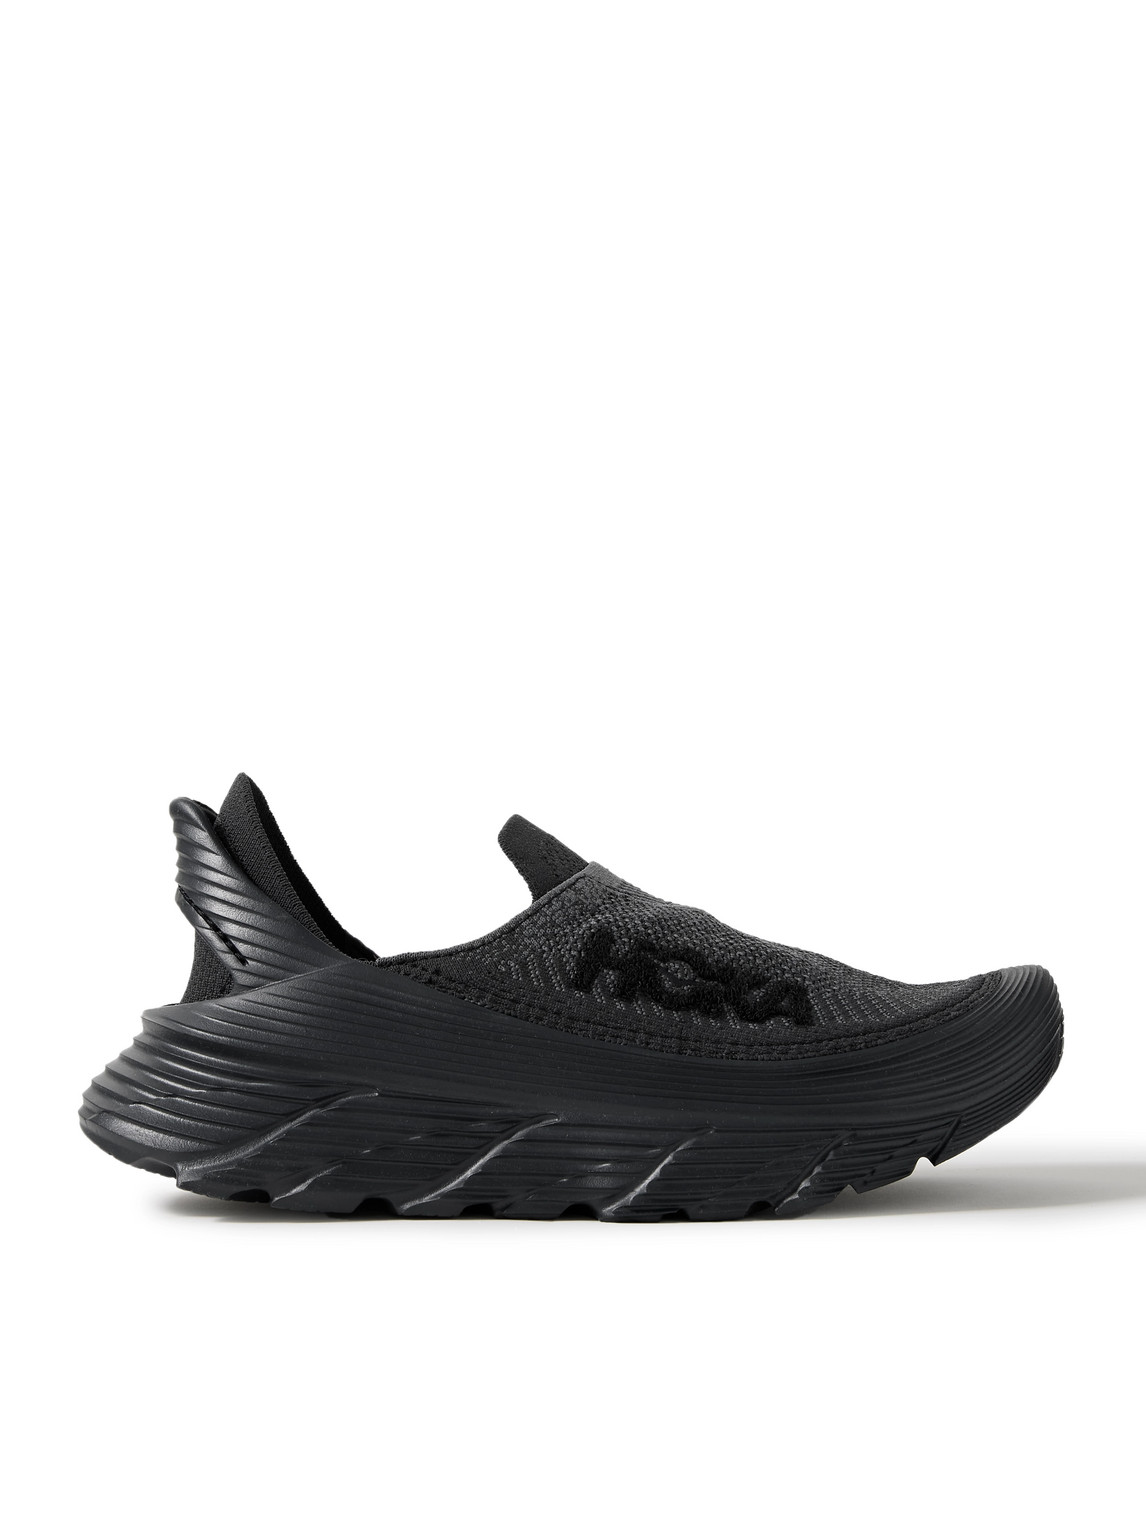 Hoka One One Restore Tc Slip-on Sneakers In Black